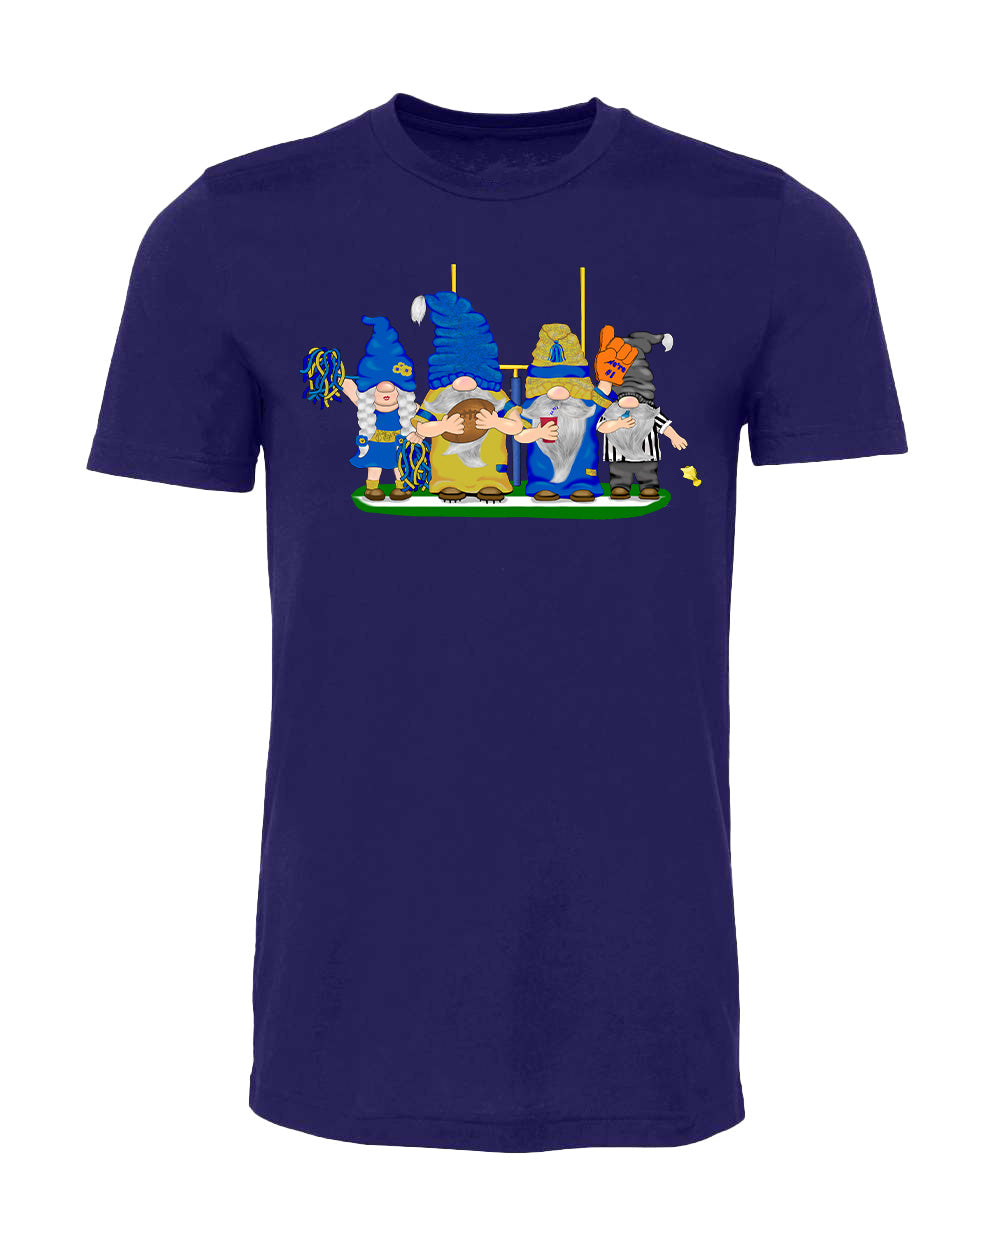 Blue & Gold Football Gnomes on Men's T-shirt (similar to LA)